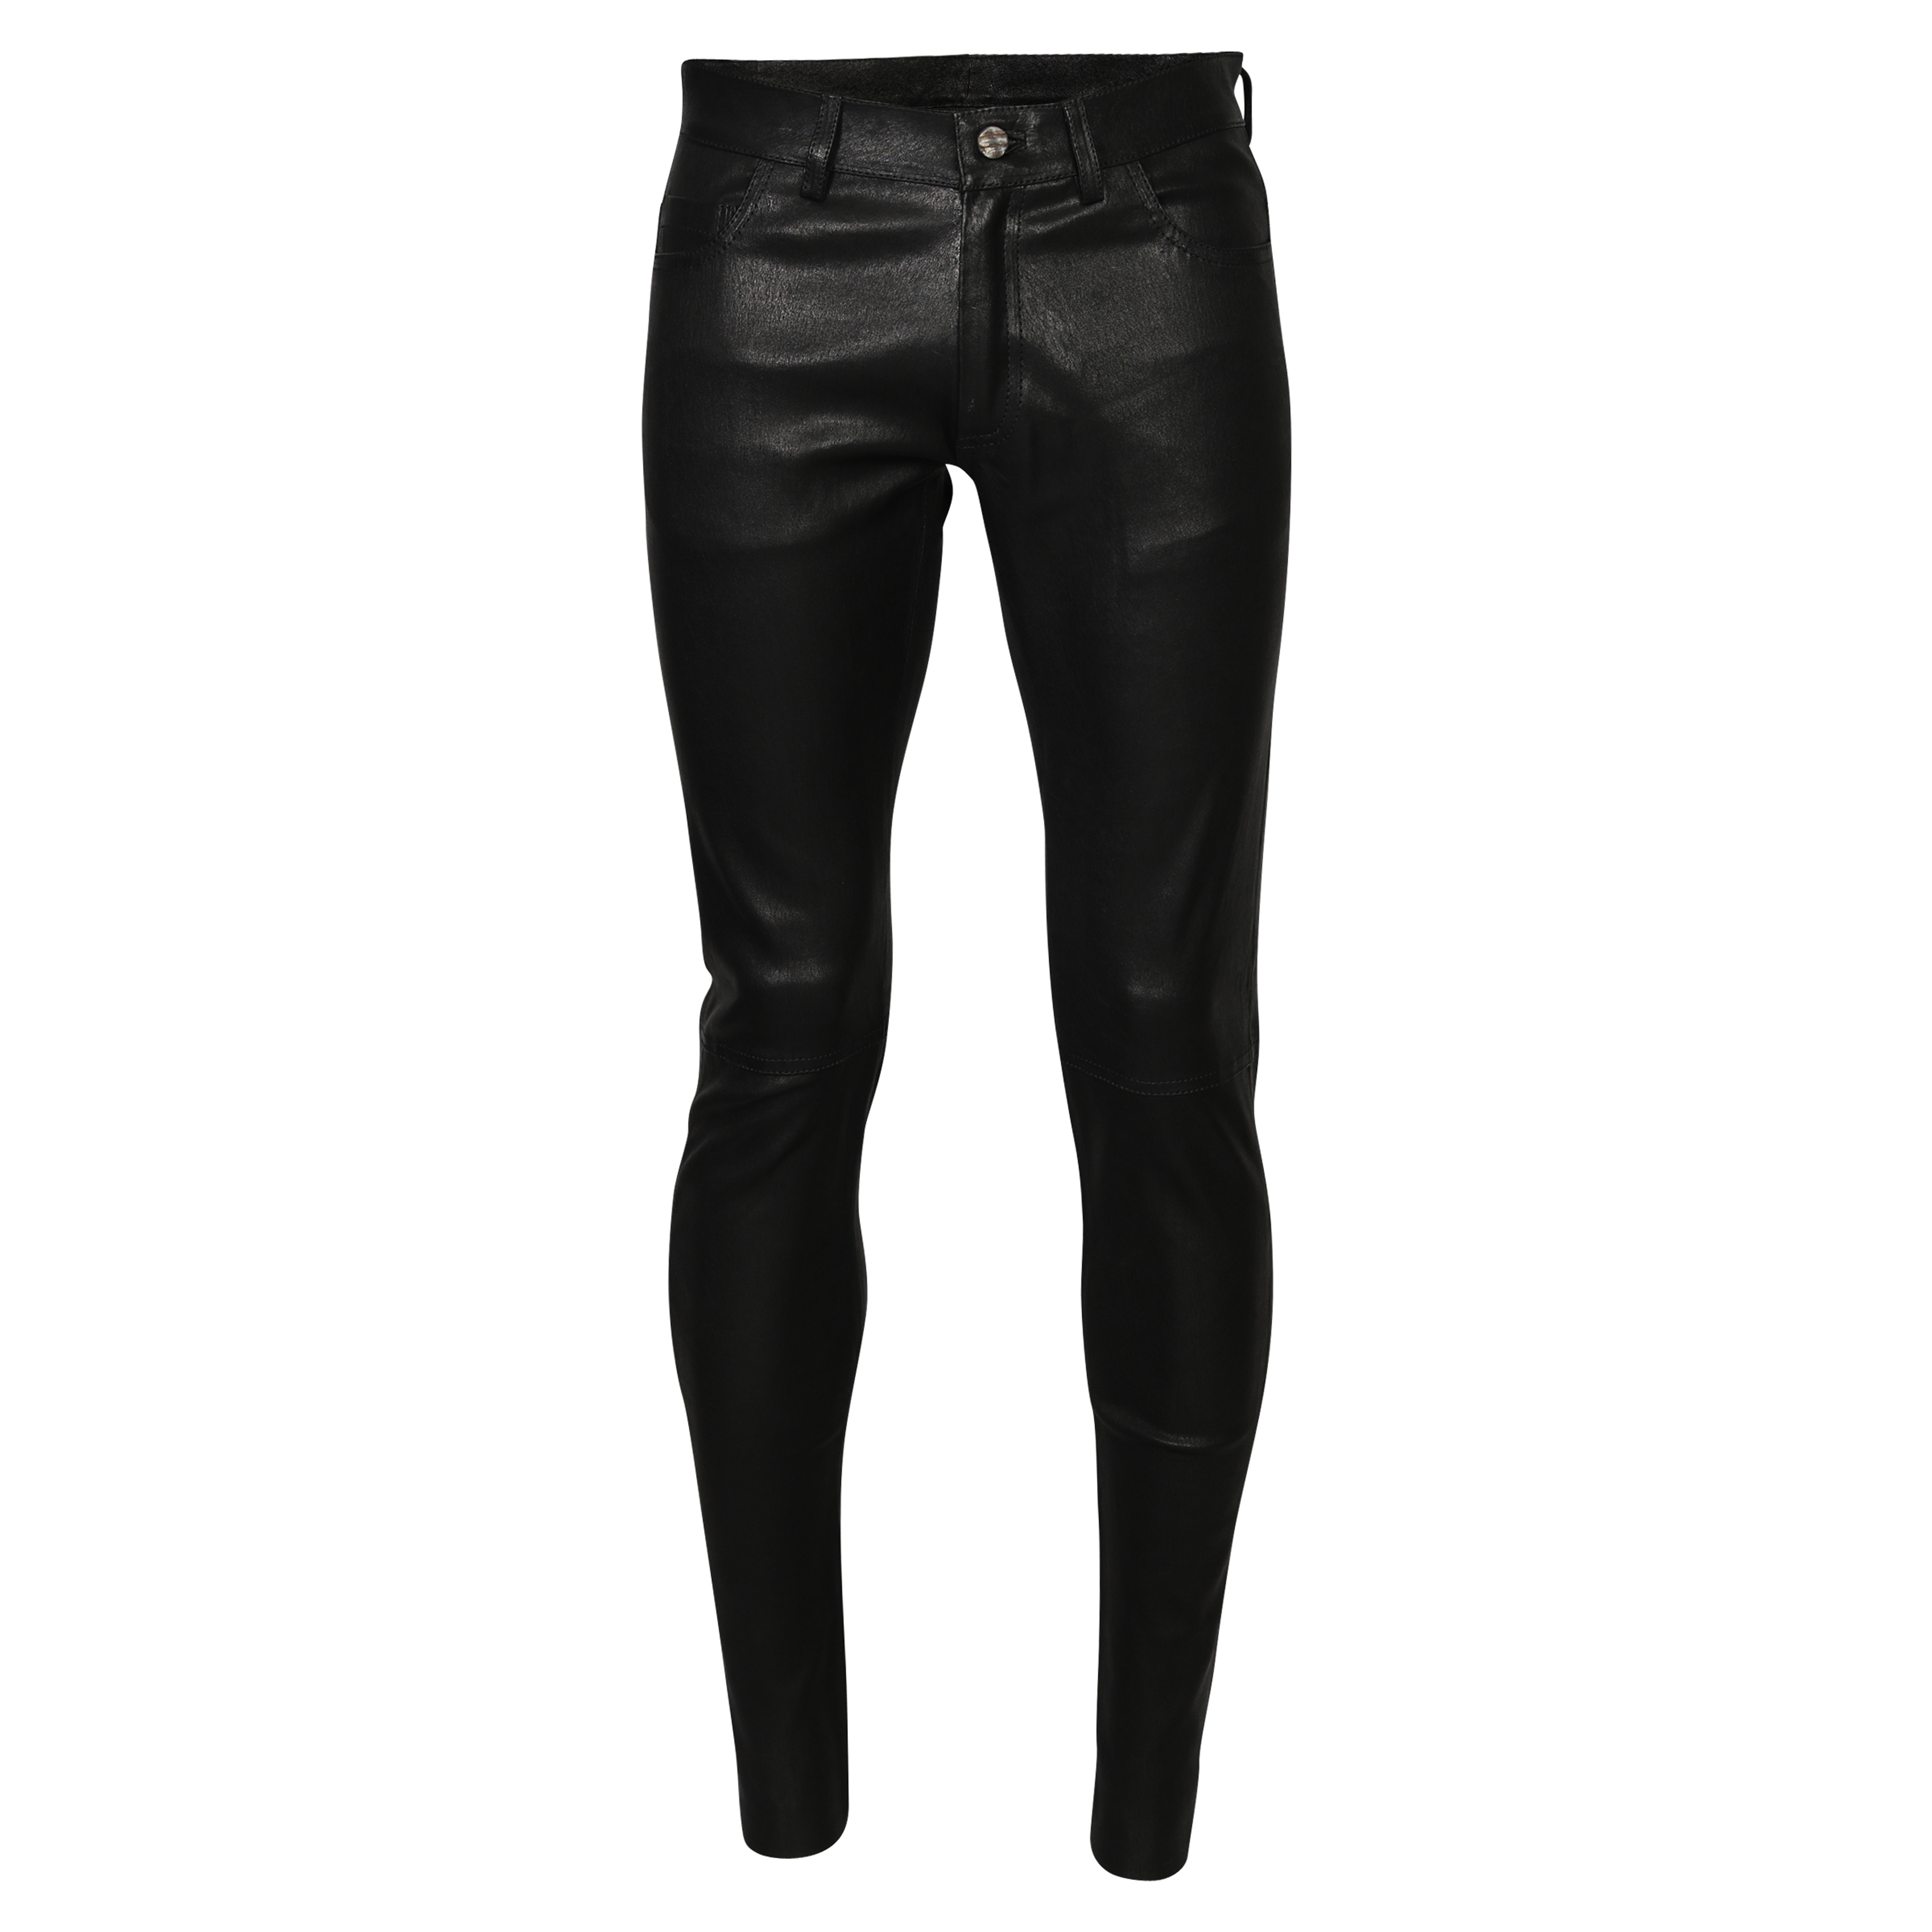 Giorgio Brato Leather Pant in Black 52